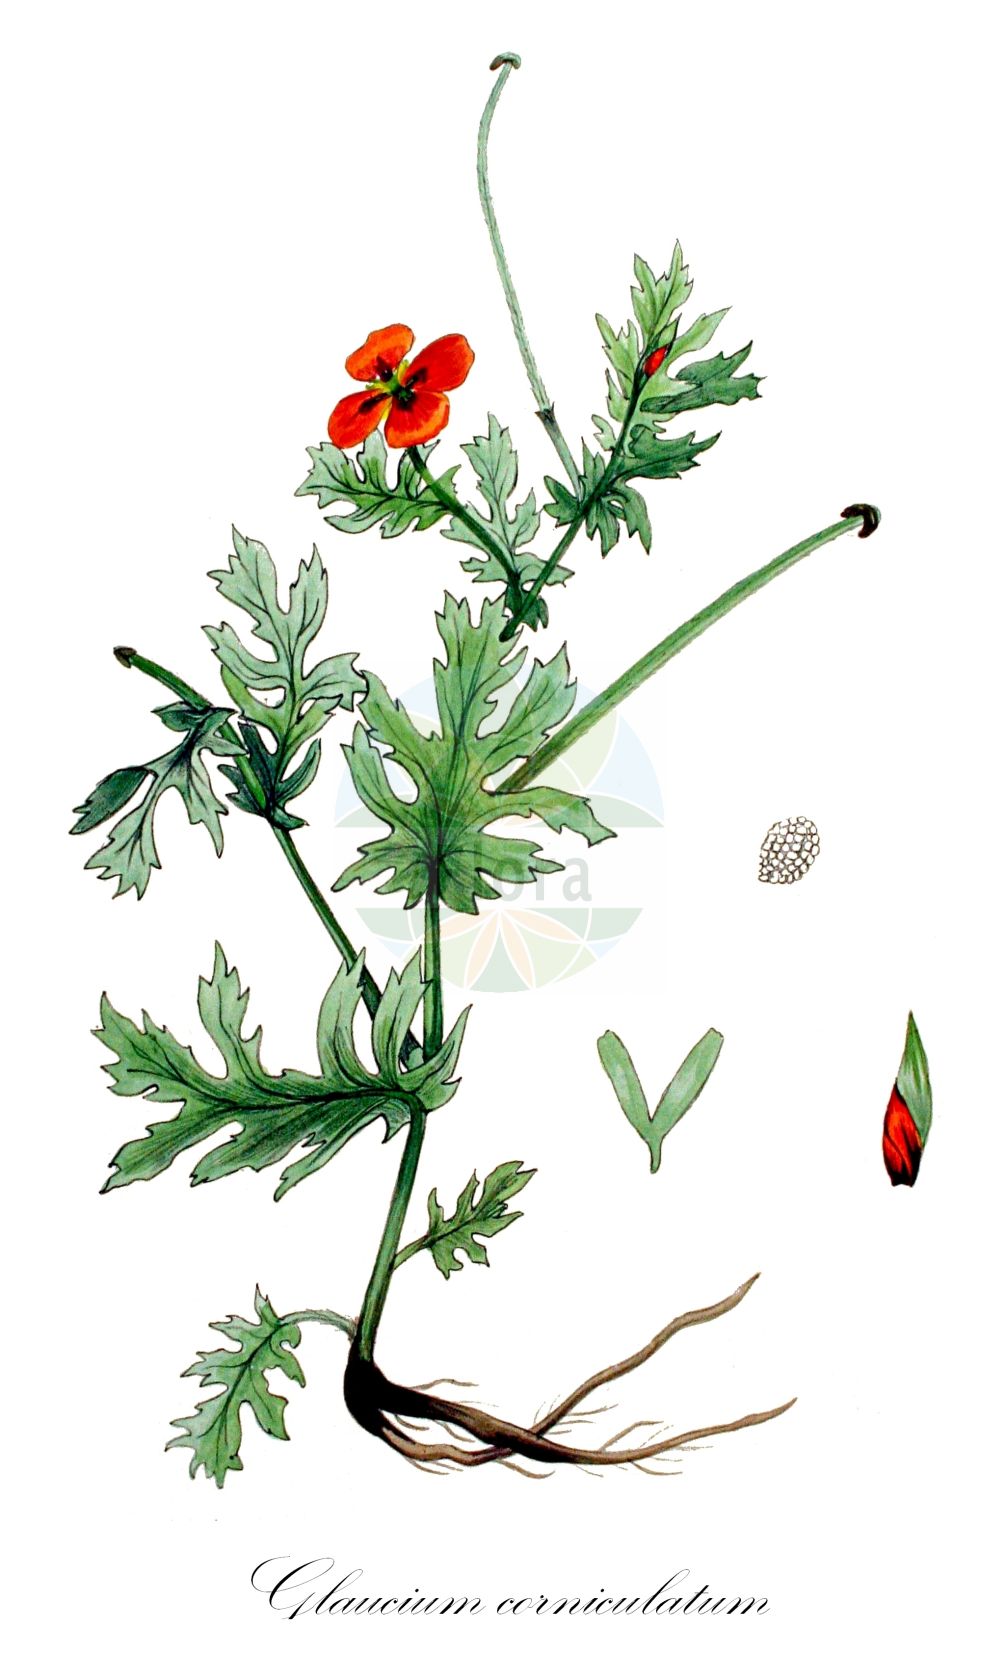 Historische Abbildung von Glaucium corniculatum (Roter Hornmohn - Red Horned-poppy). Das Bild zeigt Blatt, Bluete, Frucht und Same. ---- Historical Drawing of Glaucium corniculatum (Roter Hornmohn - Red Horned-poppy). The image is showing leaf, flower, fruit and seed.(Glaucium corniculatum,Roter Hornmohn,Red Horned-poppy,Chelidonium corniculatum,Glaucium aurantiacum,Glaucium corniculatum,Glaucium grandiflorum,Glaucium phoeniceum,Glaucium rubrum,Glaucium tricolor,Roter Hornmohn,Red Horned-poppy,Blackspot Hornpoppy,Red-horn Poppy,Yellow Hornpoppy,Glaucium,Hornmohn,Hornpoppy,Papaveraceae,Mohngewächse,Poppy family,Blatt,Bluete,Frucht,Same,leaf,flower,fruit,seed,Kops (1800-1934))